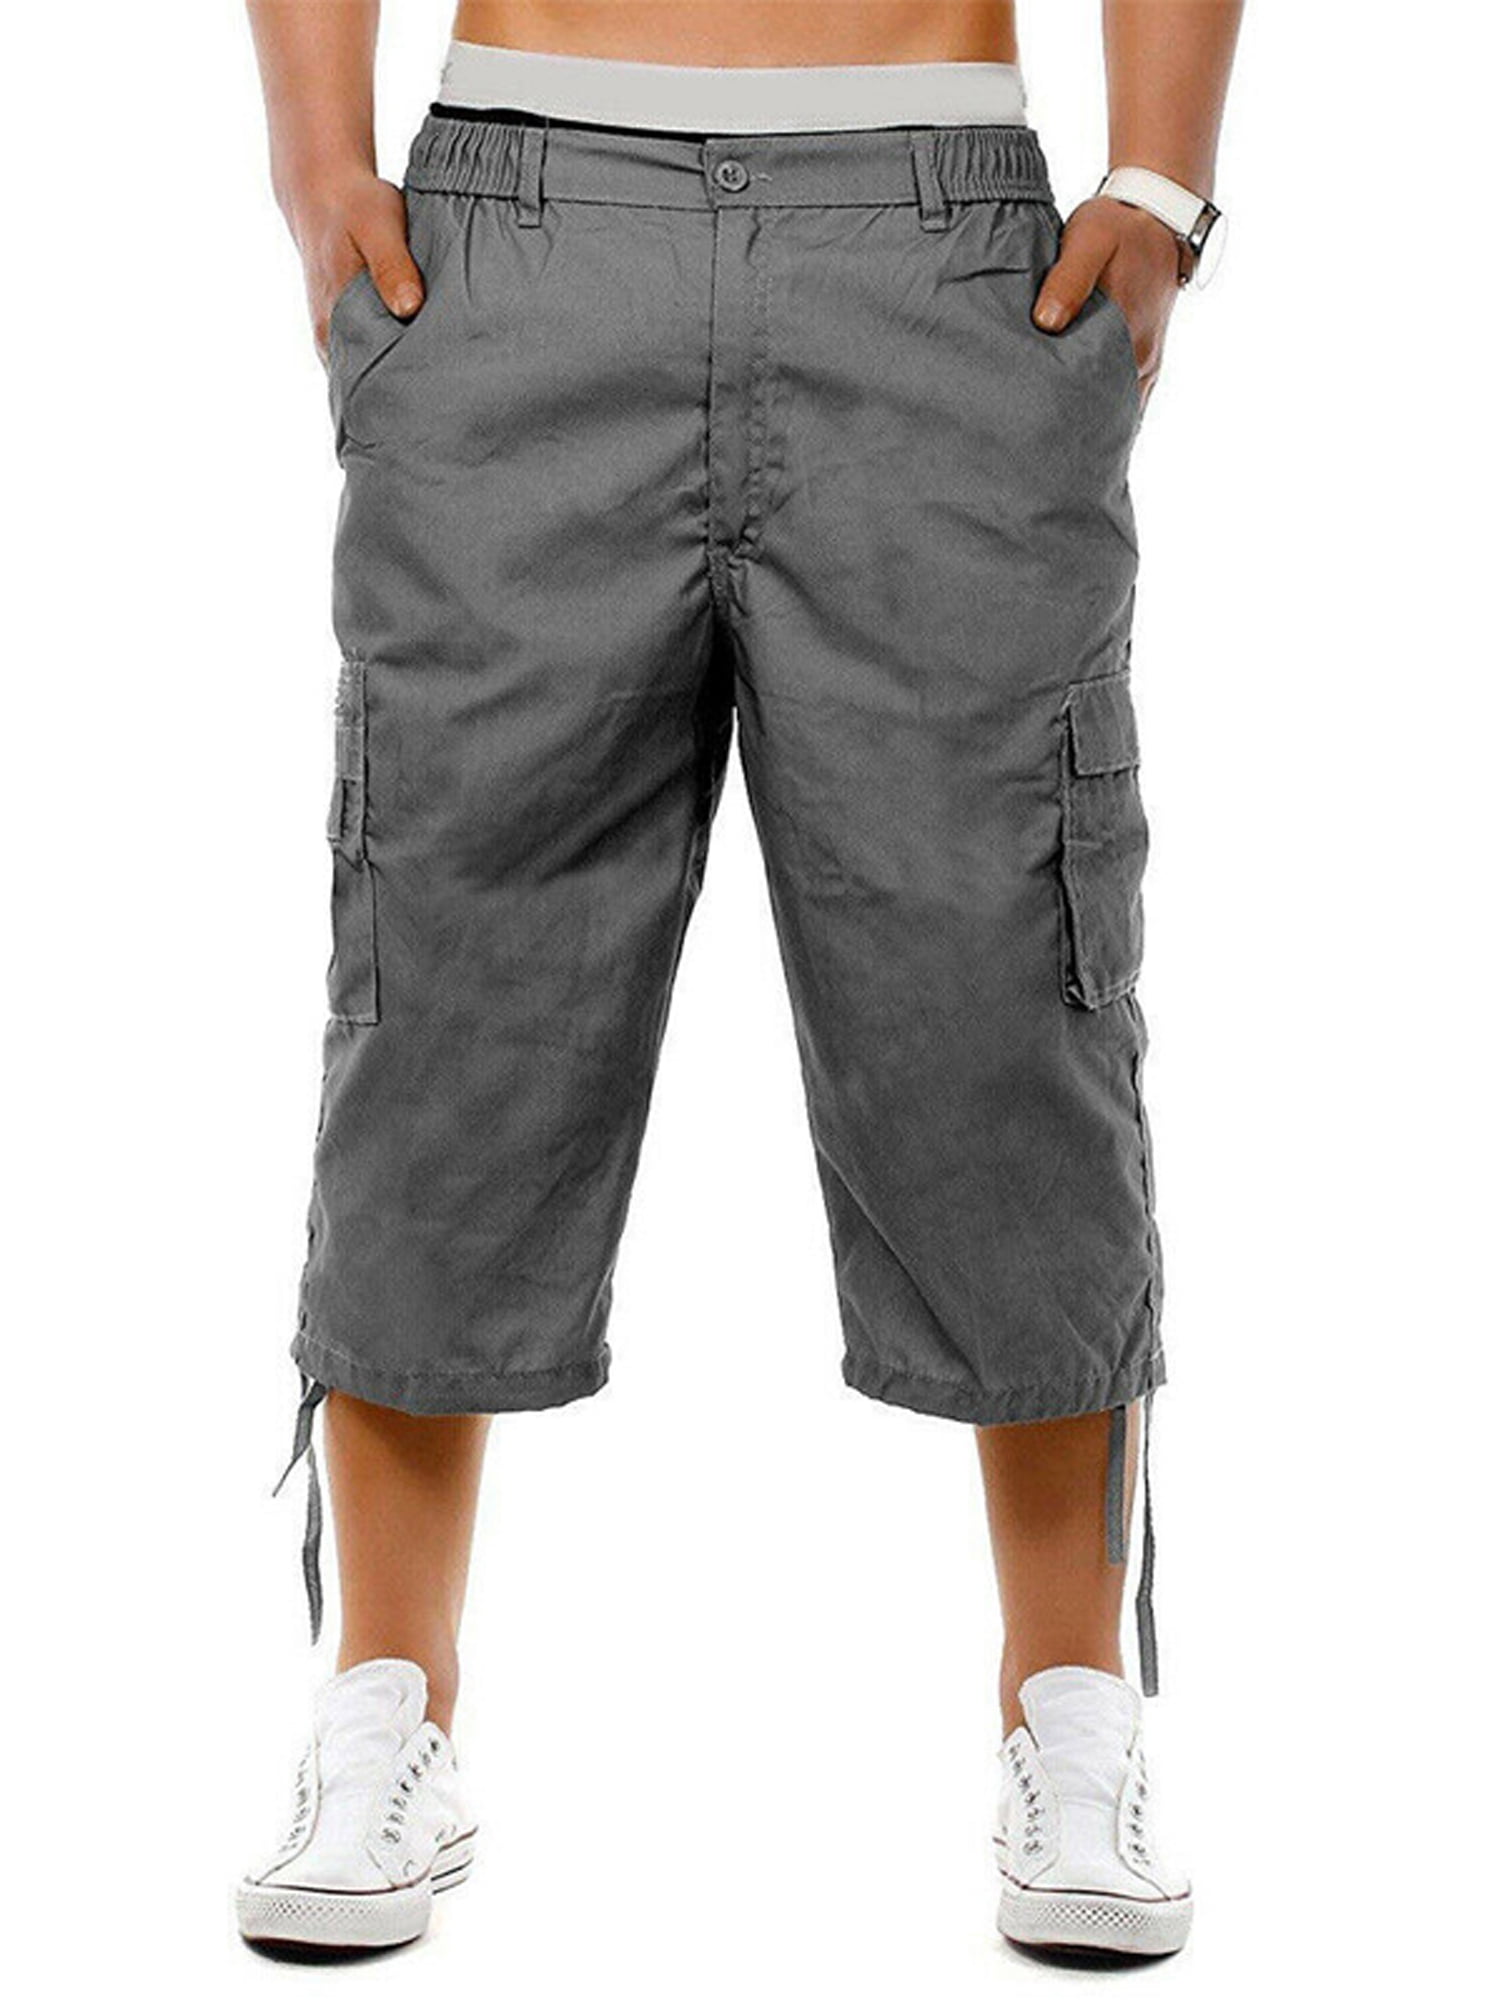 VIMEN】Plus Size Men 3/4 Cargo Pants. Plus Size Clothes Online Shop  Singapore - Large Size Clothing Shop